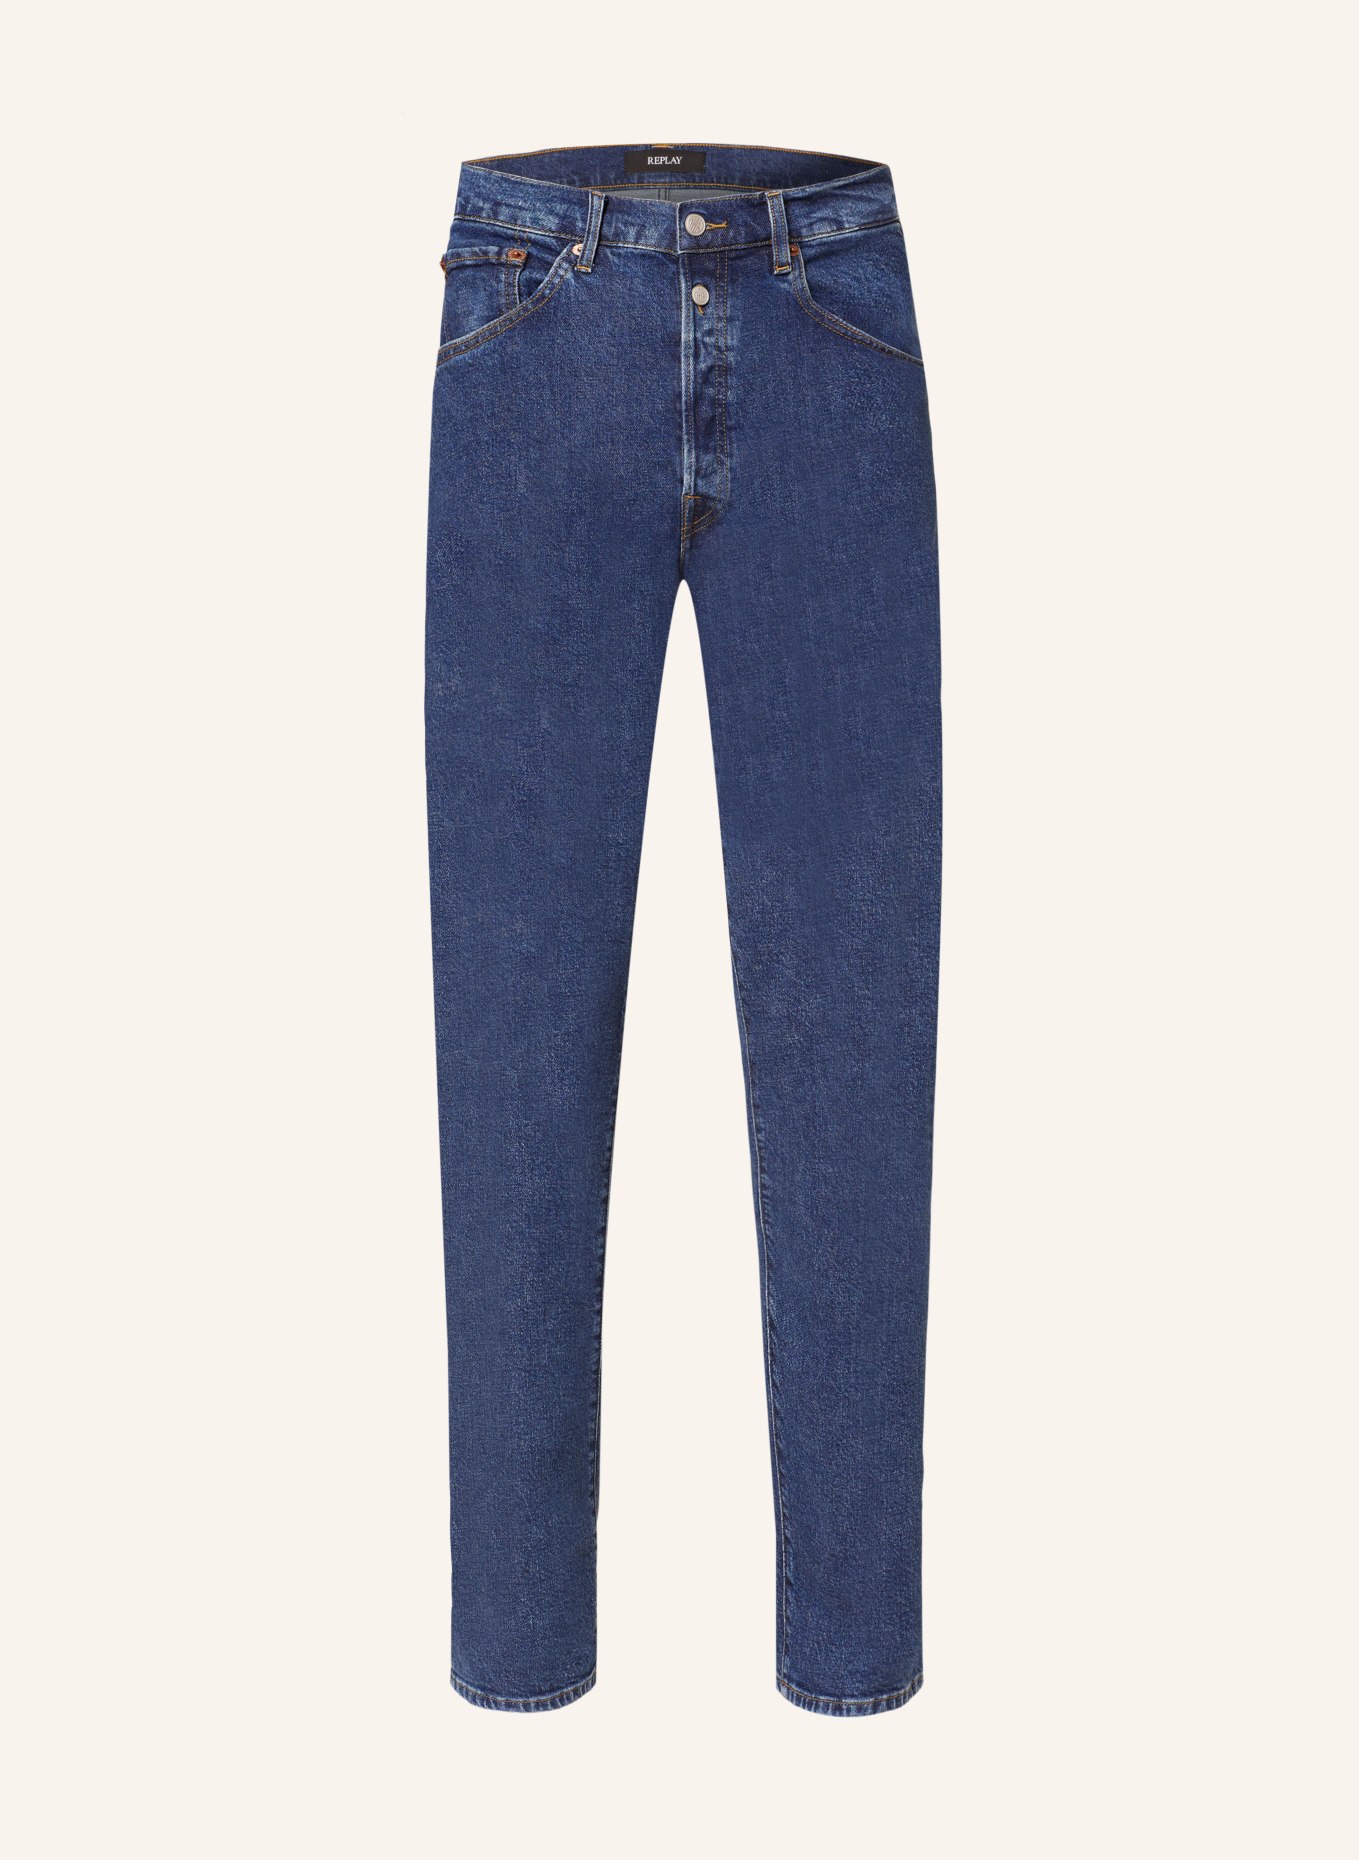 REPLAY Jeans M9ZI Straight Fit, Farbe: 007 DARK BLUE (Bild 1)